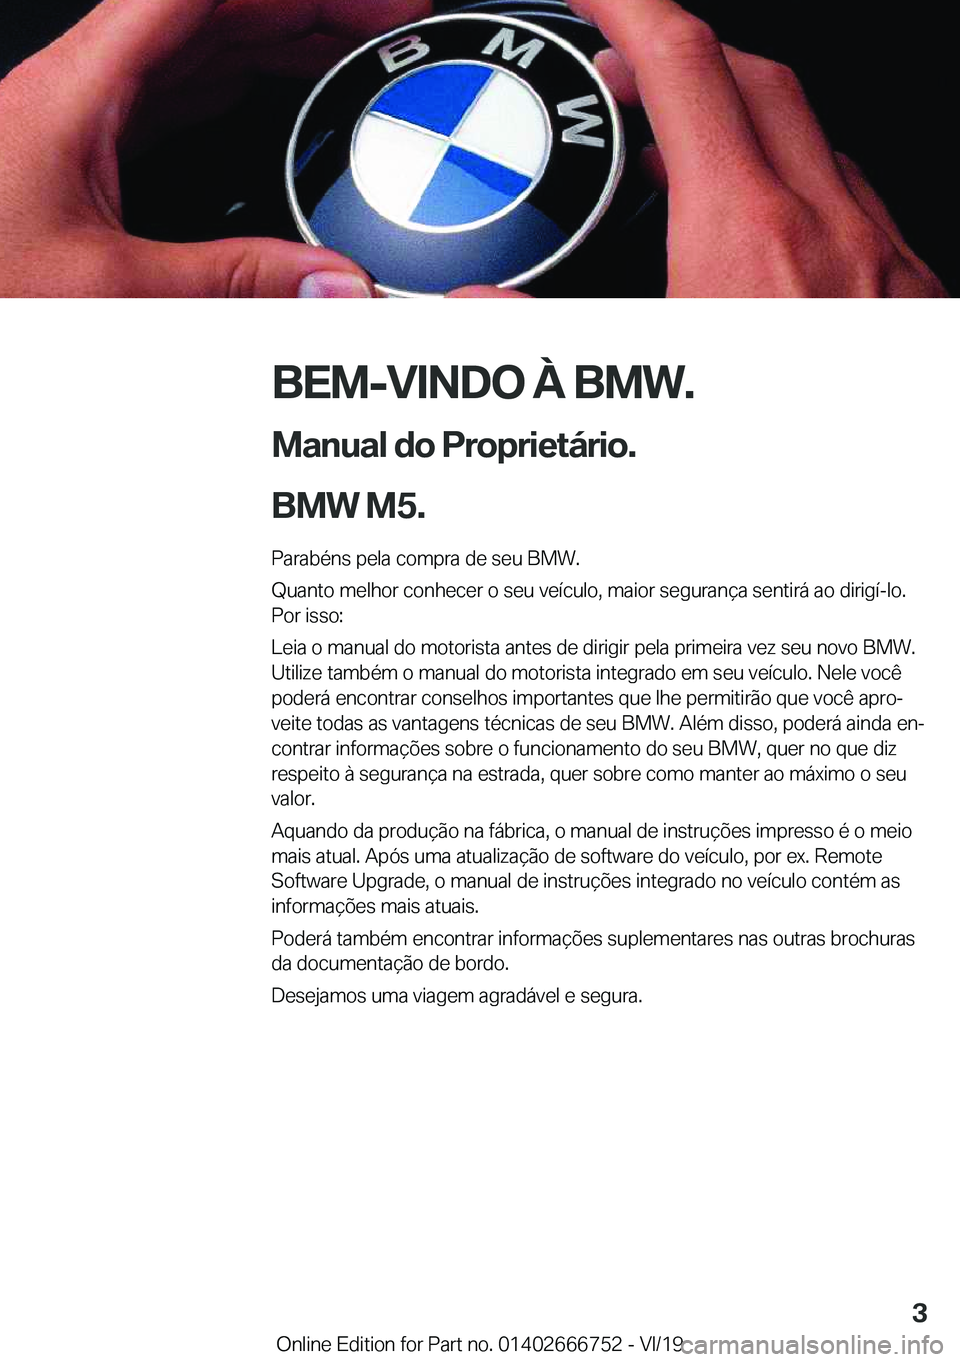 BMW M5 2020  Manual do condutor (in Portuguese) �B�E�M�-�V�I�N�D�O��À��B�M�W�.
�M�a�n�u�a�l��d�o��P�r�o�p�r�i�e�t�á�r�i�o�.
�B�M�W��M�5�. �P�a�r�a�b�é�n�s��p�e�l�a��c�o�m�p�r�a��d�e��s�e�u��B�M�W�.
�Q�u�a�n�t�o��m�e�l�h�o�r��c�o�n�h�